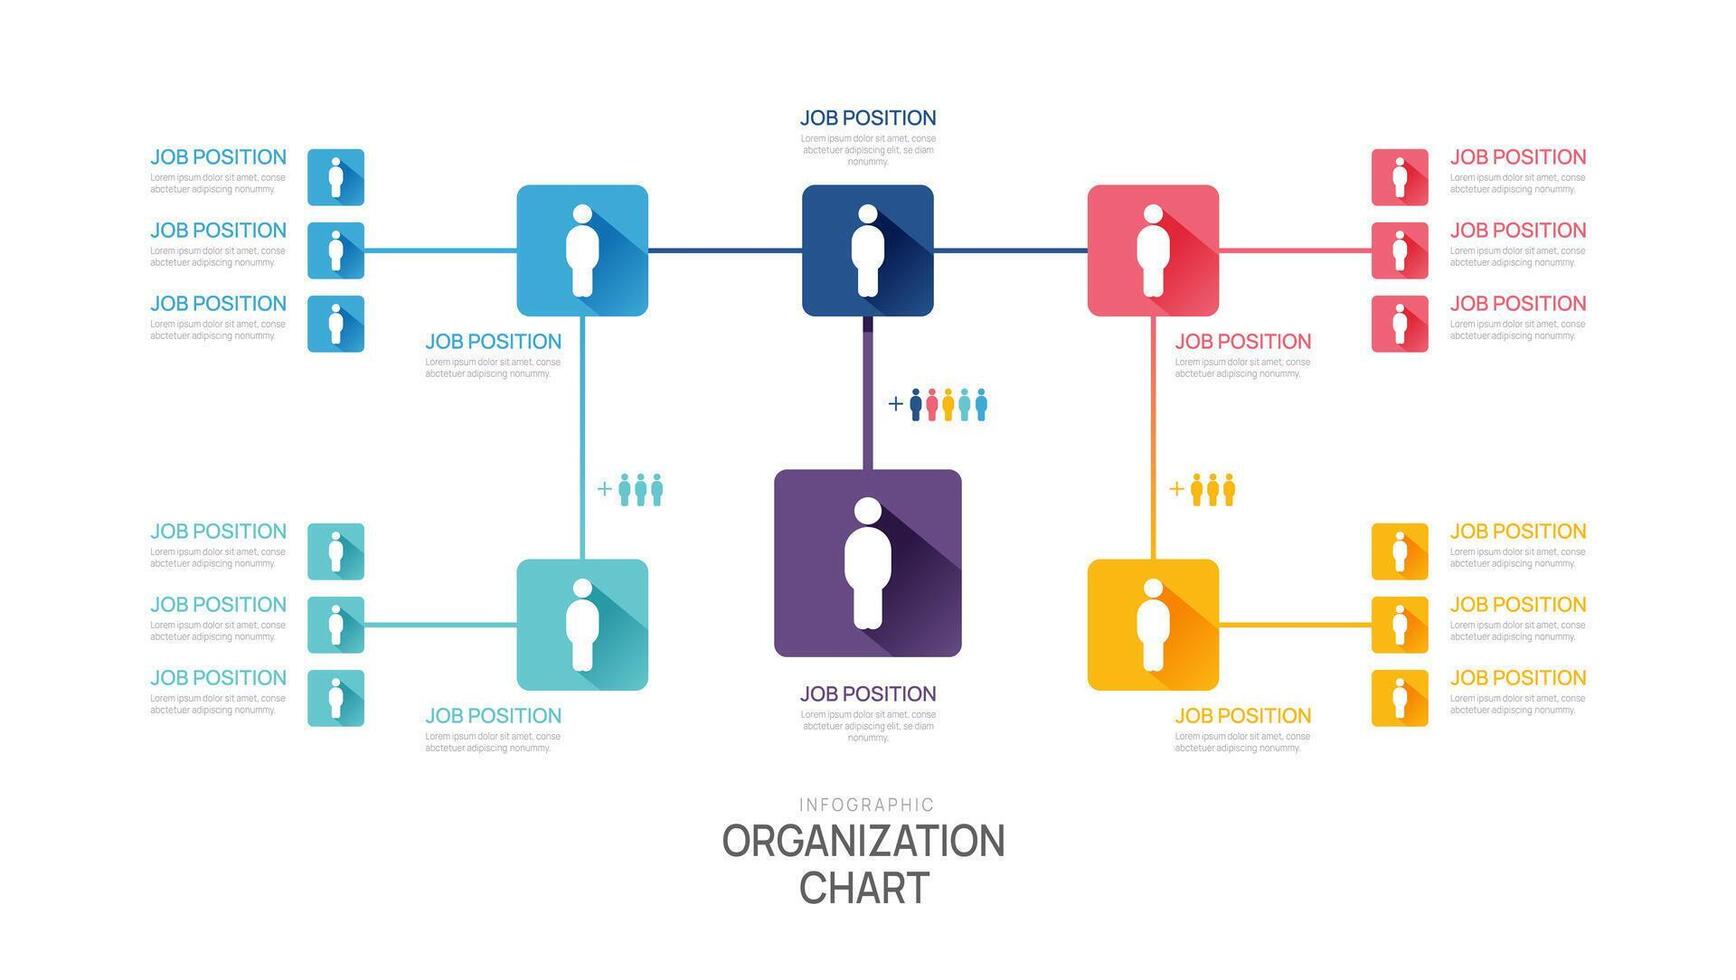 infográfico modelo para organização gráfico com o negócio avatar ícones. infográfico para negócios. vetor